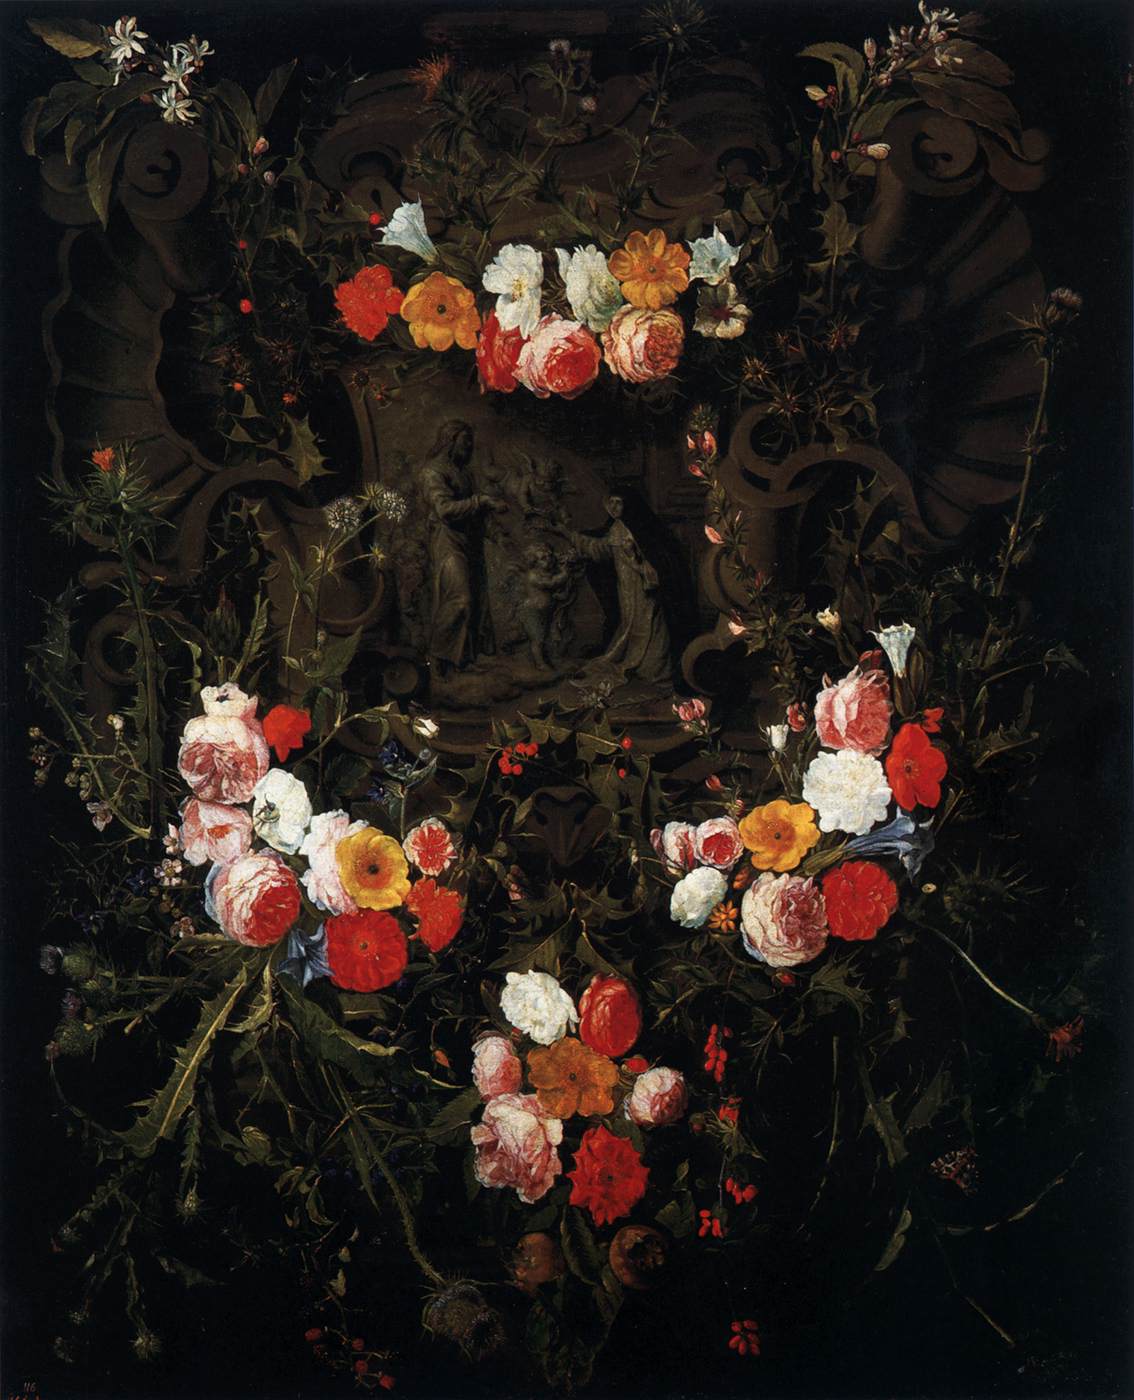 Cristo e Santa Teresa em uma guirlanda de flores